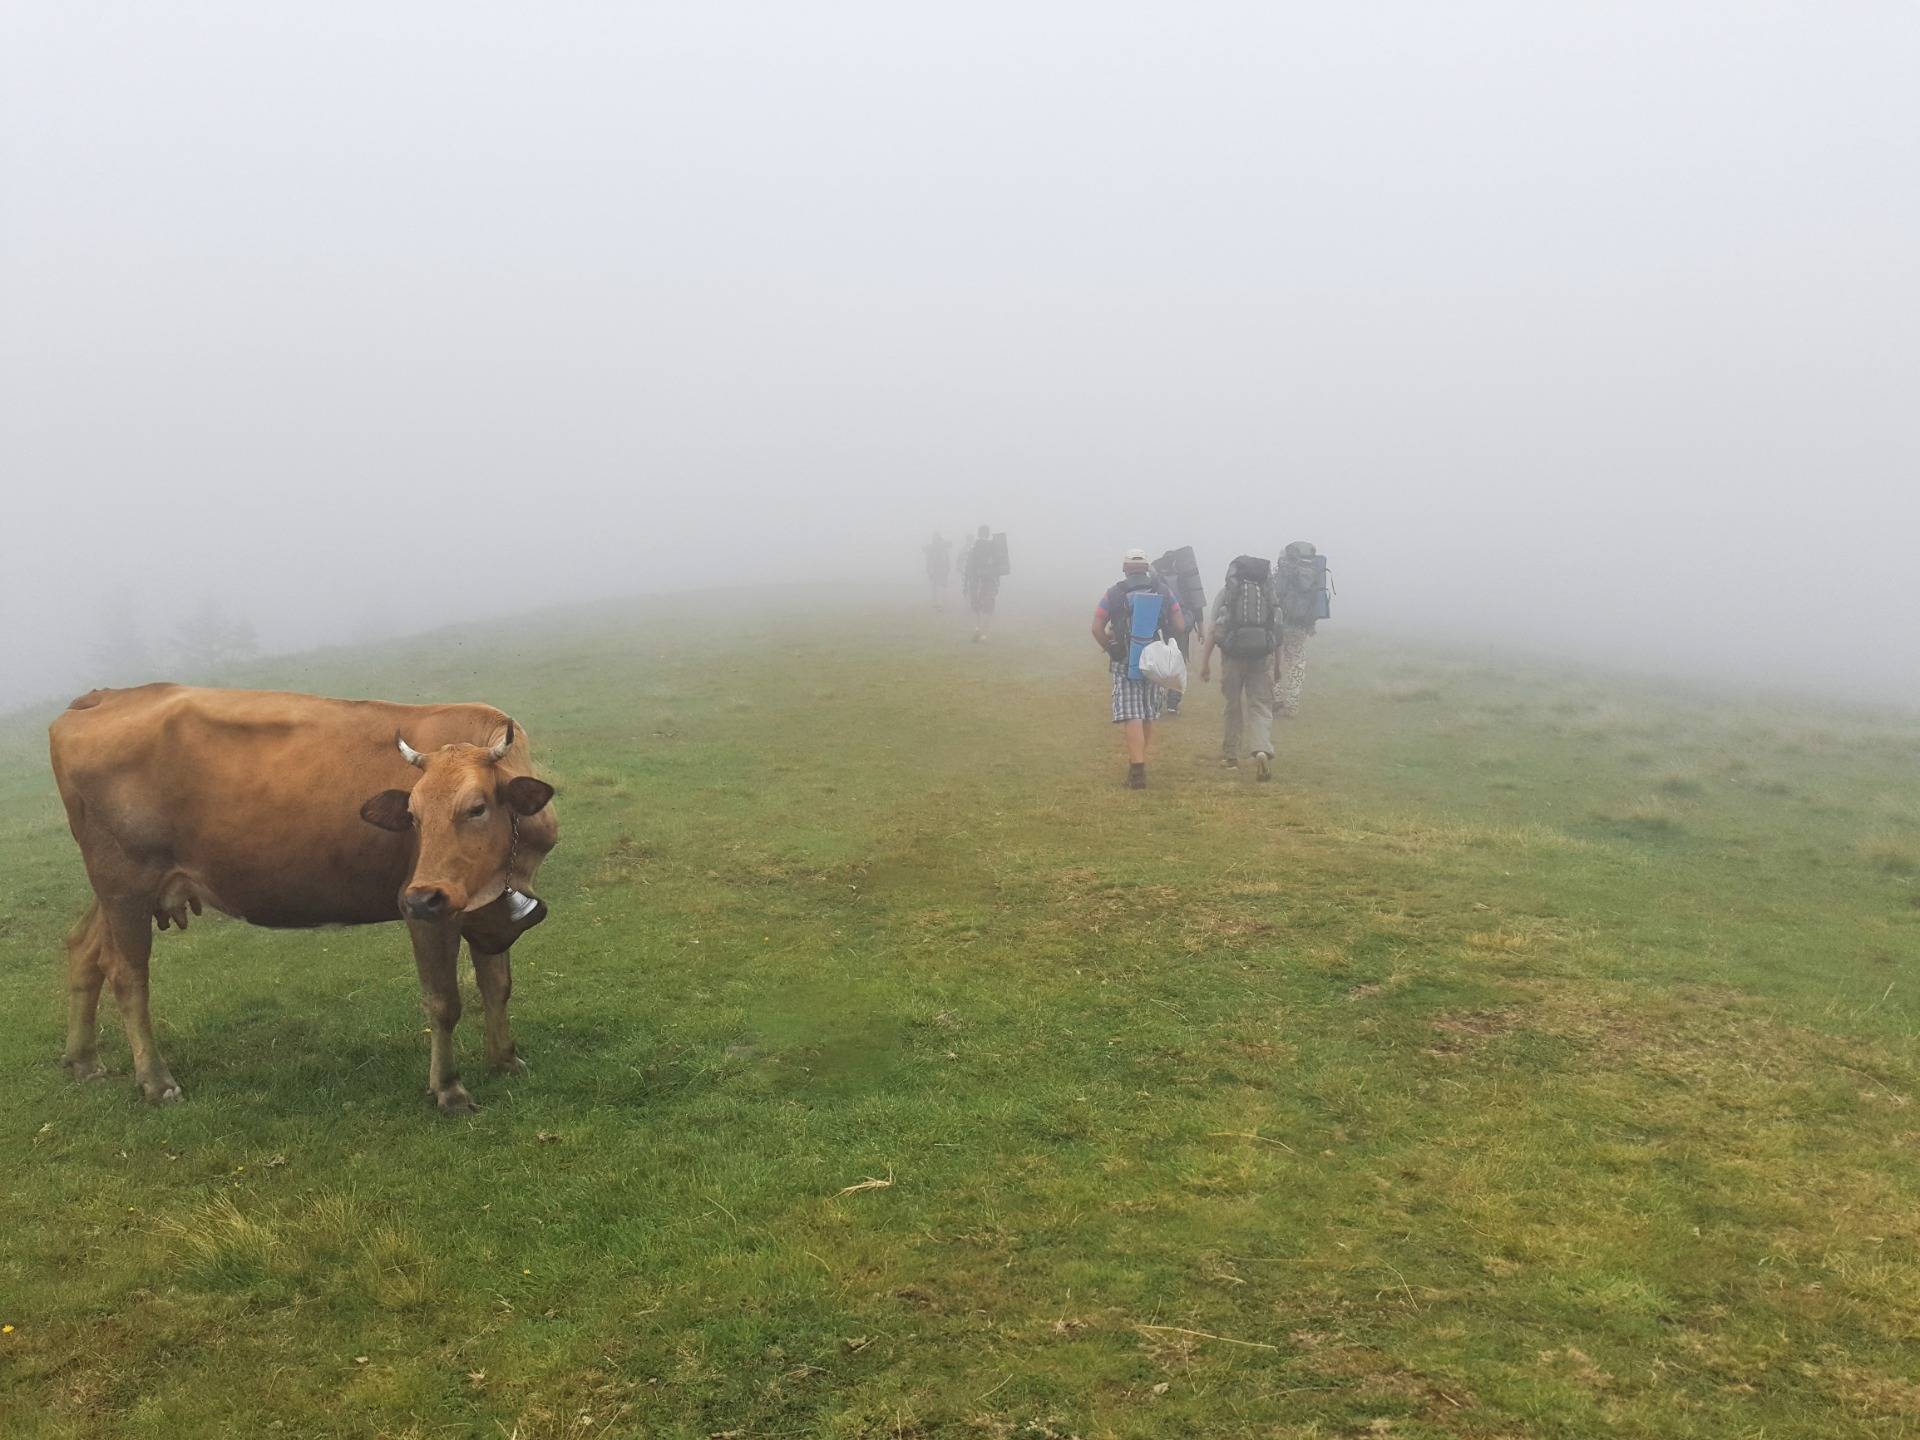 Cows are in the pasture, despite the fog